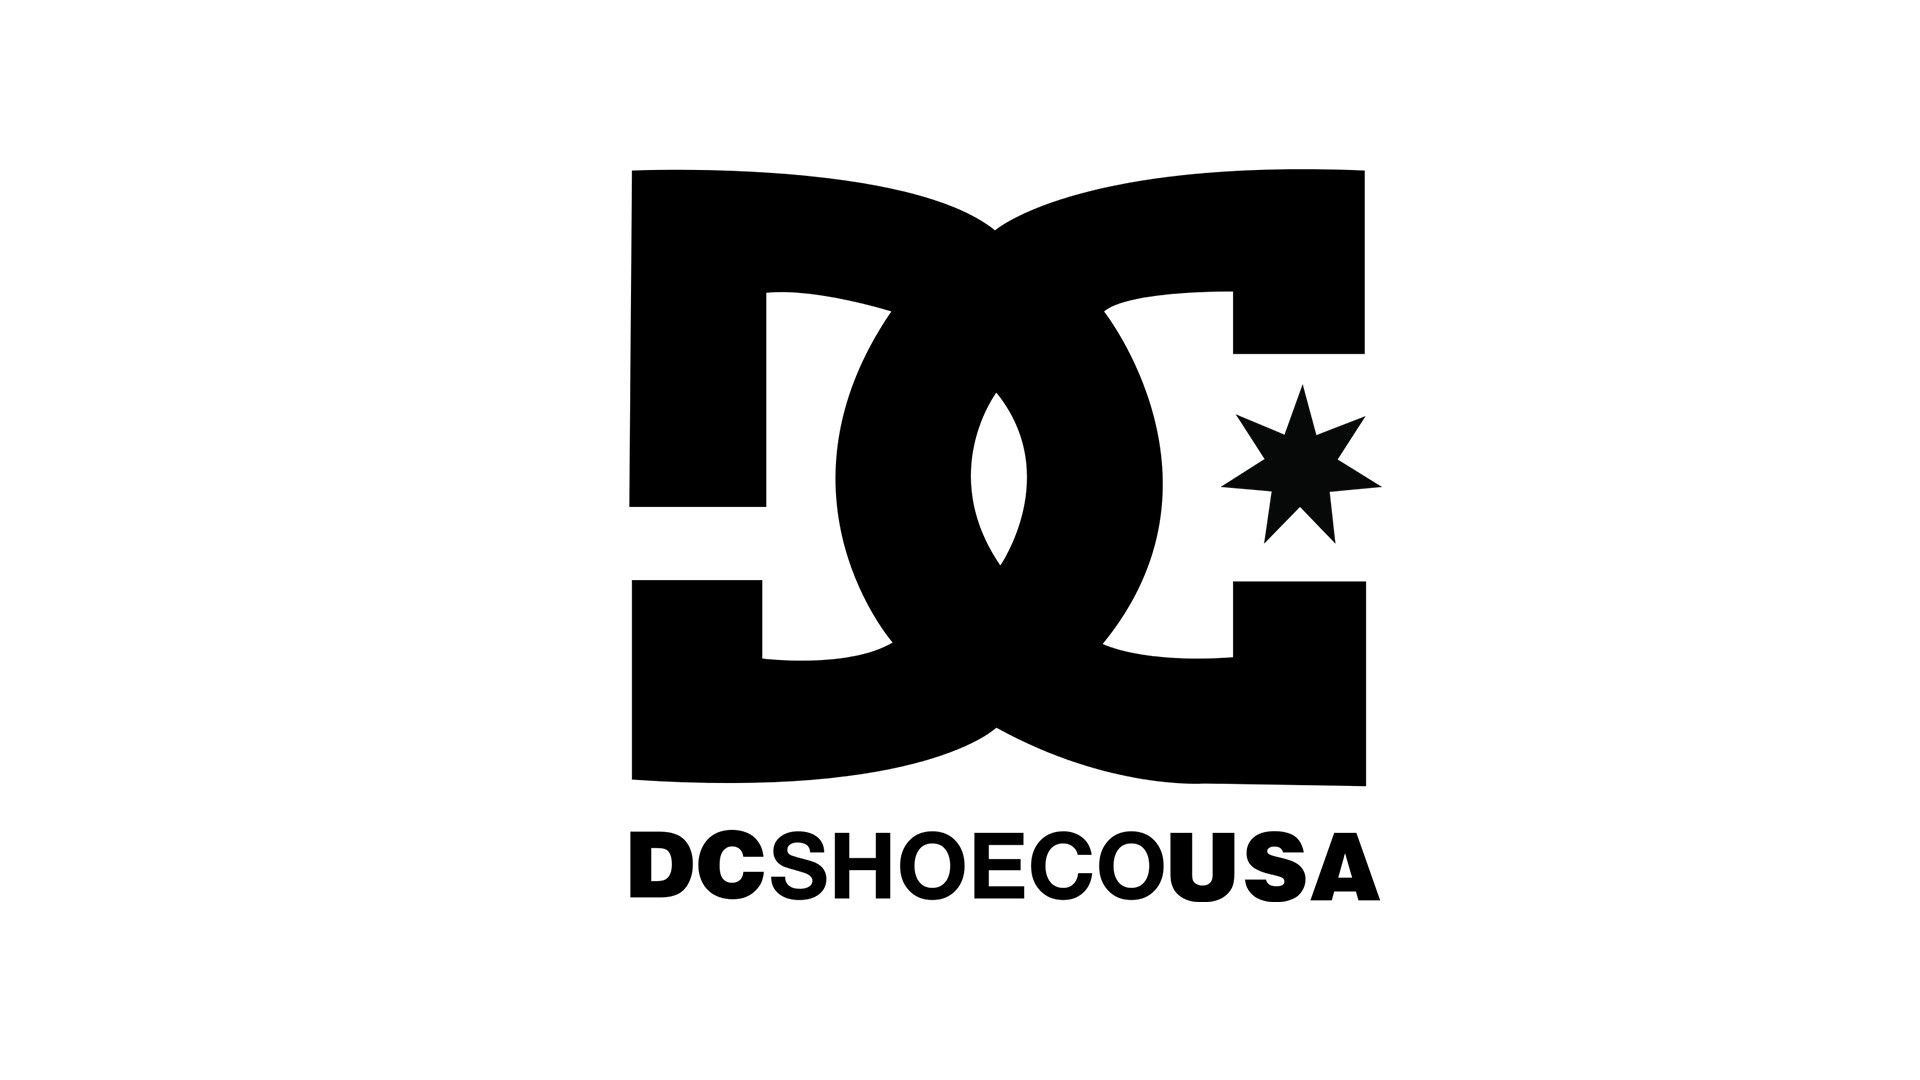 Dc Skate Logo Wallpaper On